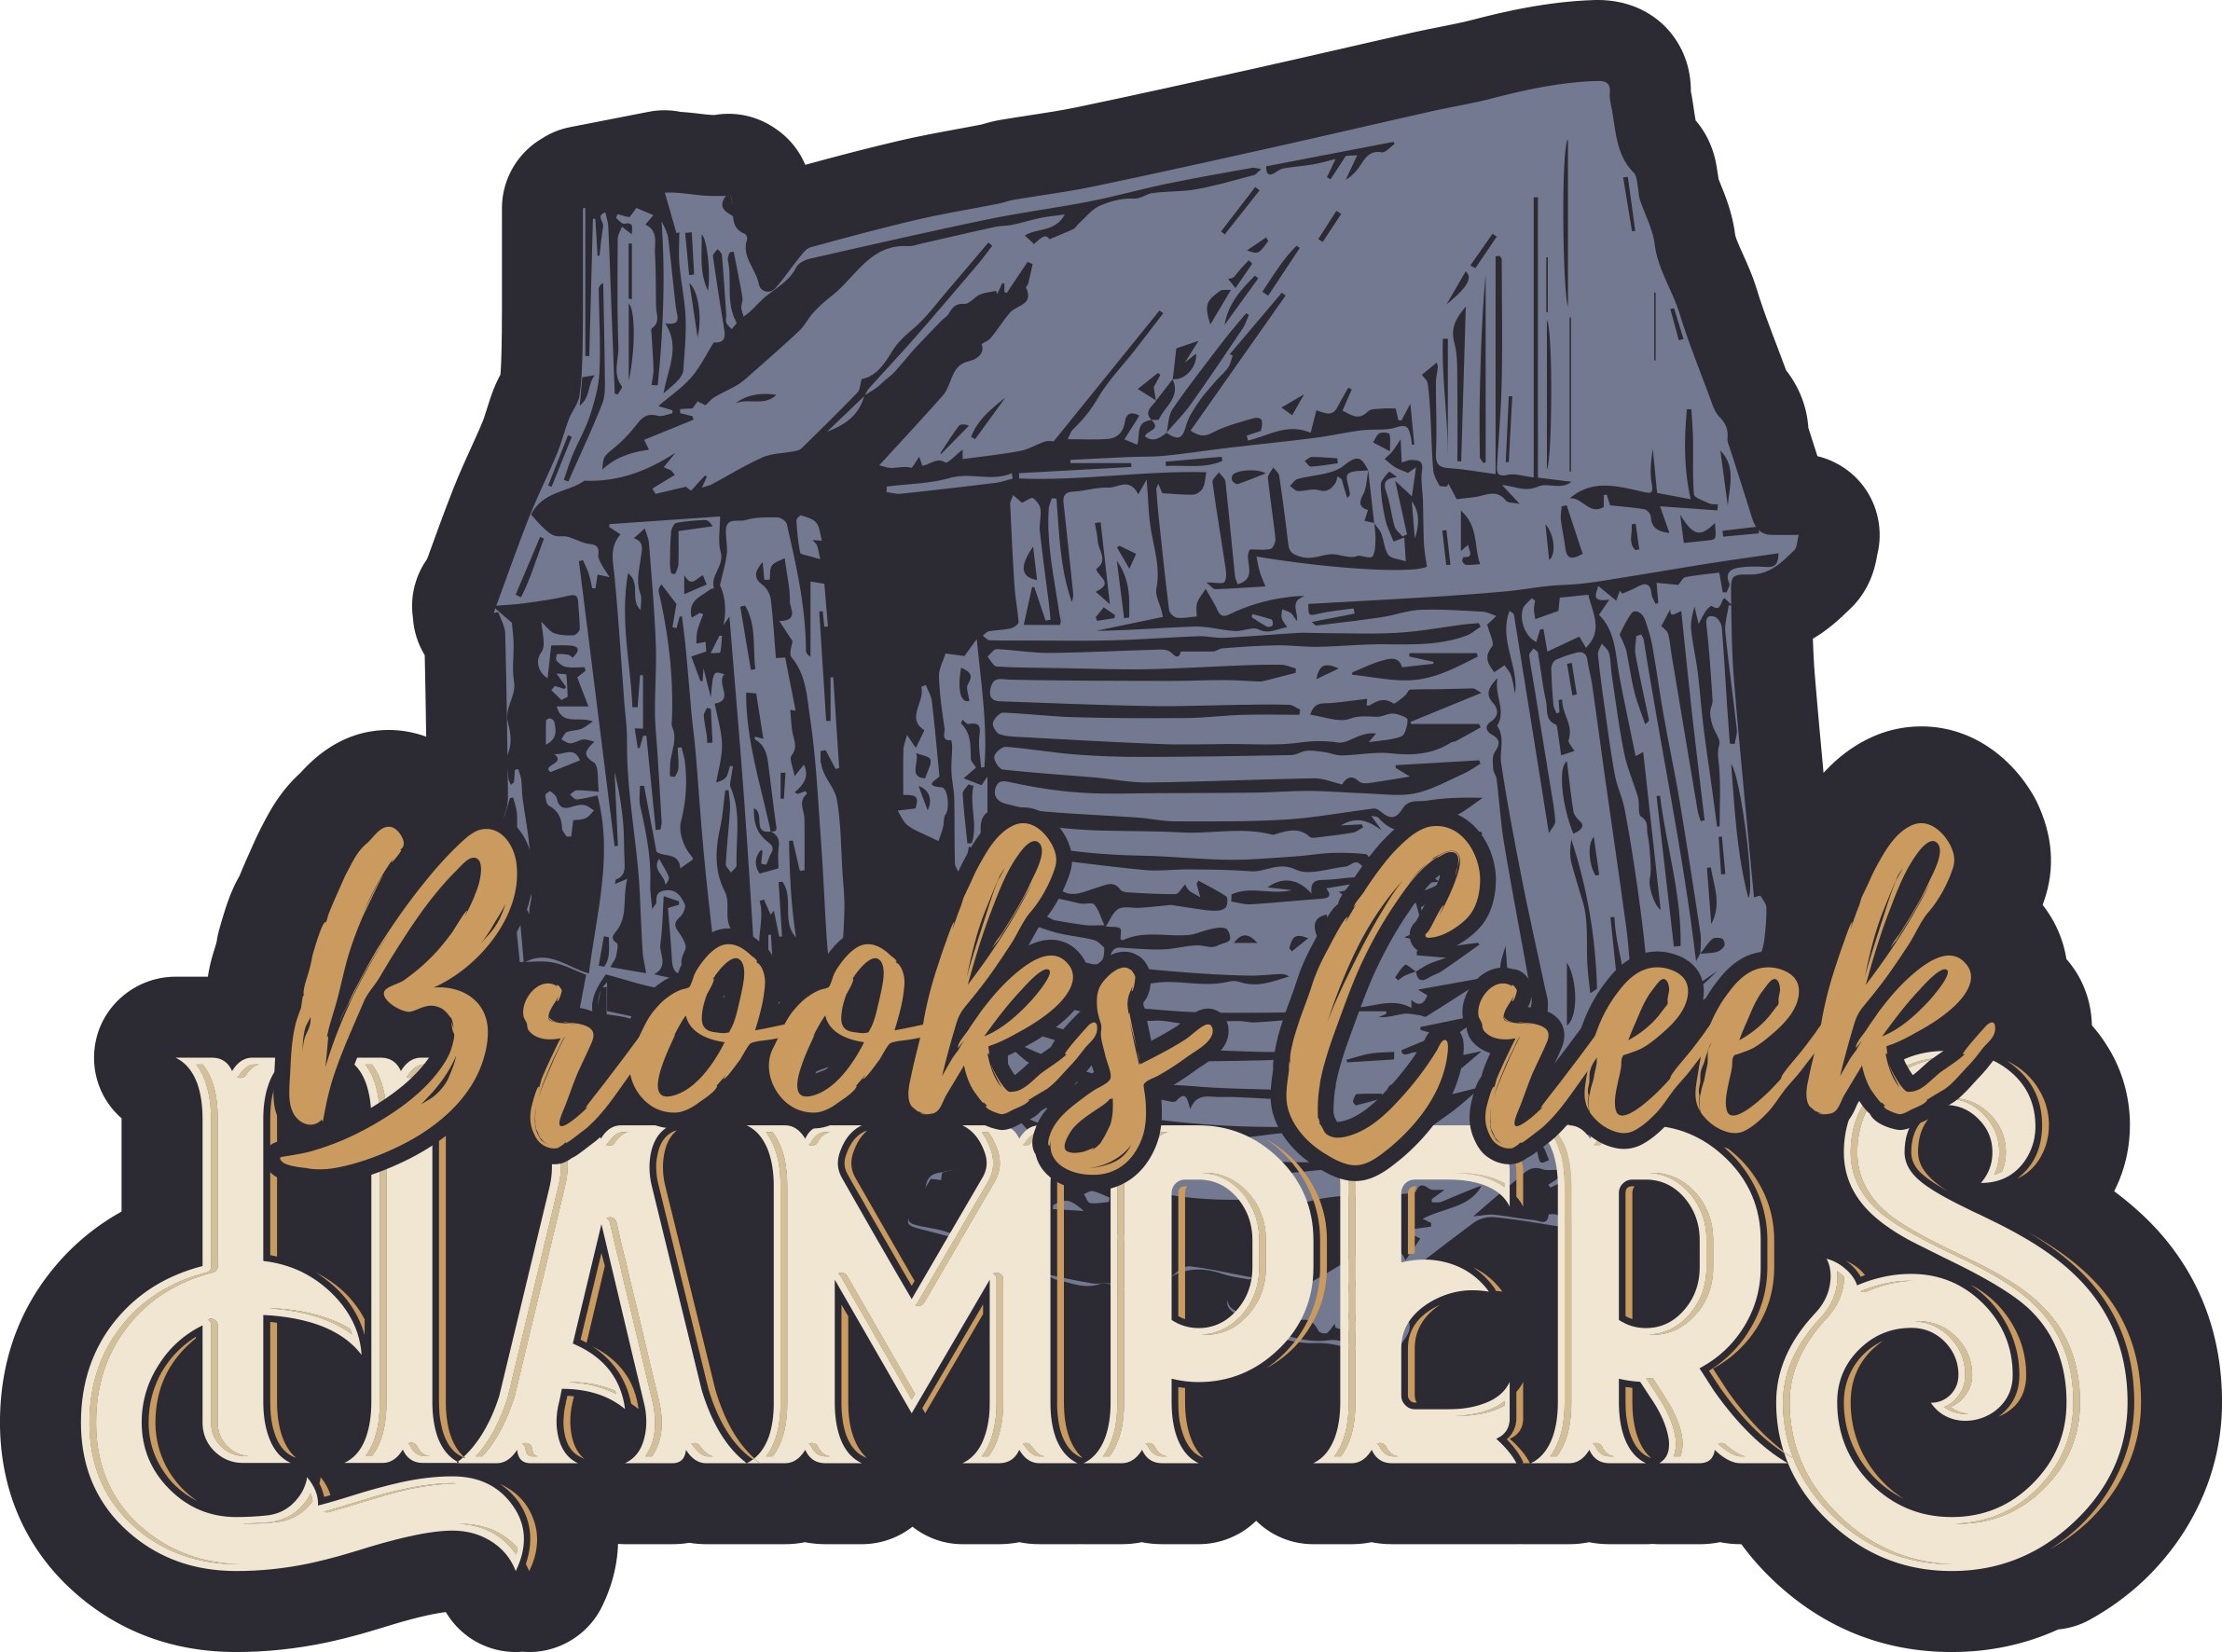 Brooks Creek Hampers